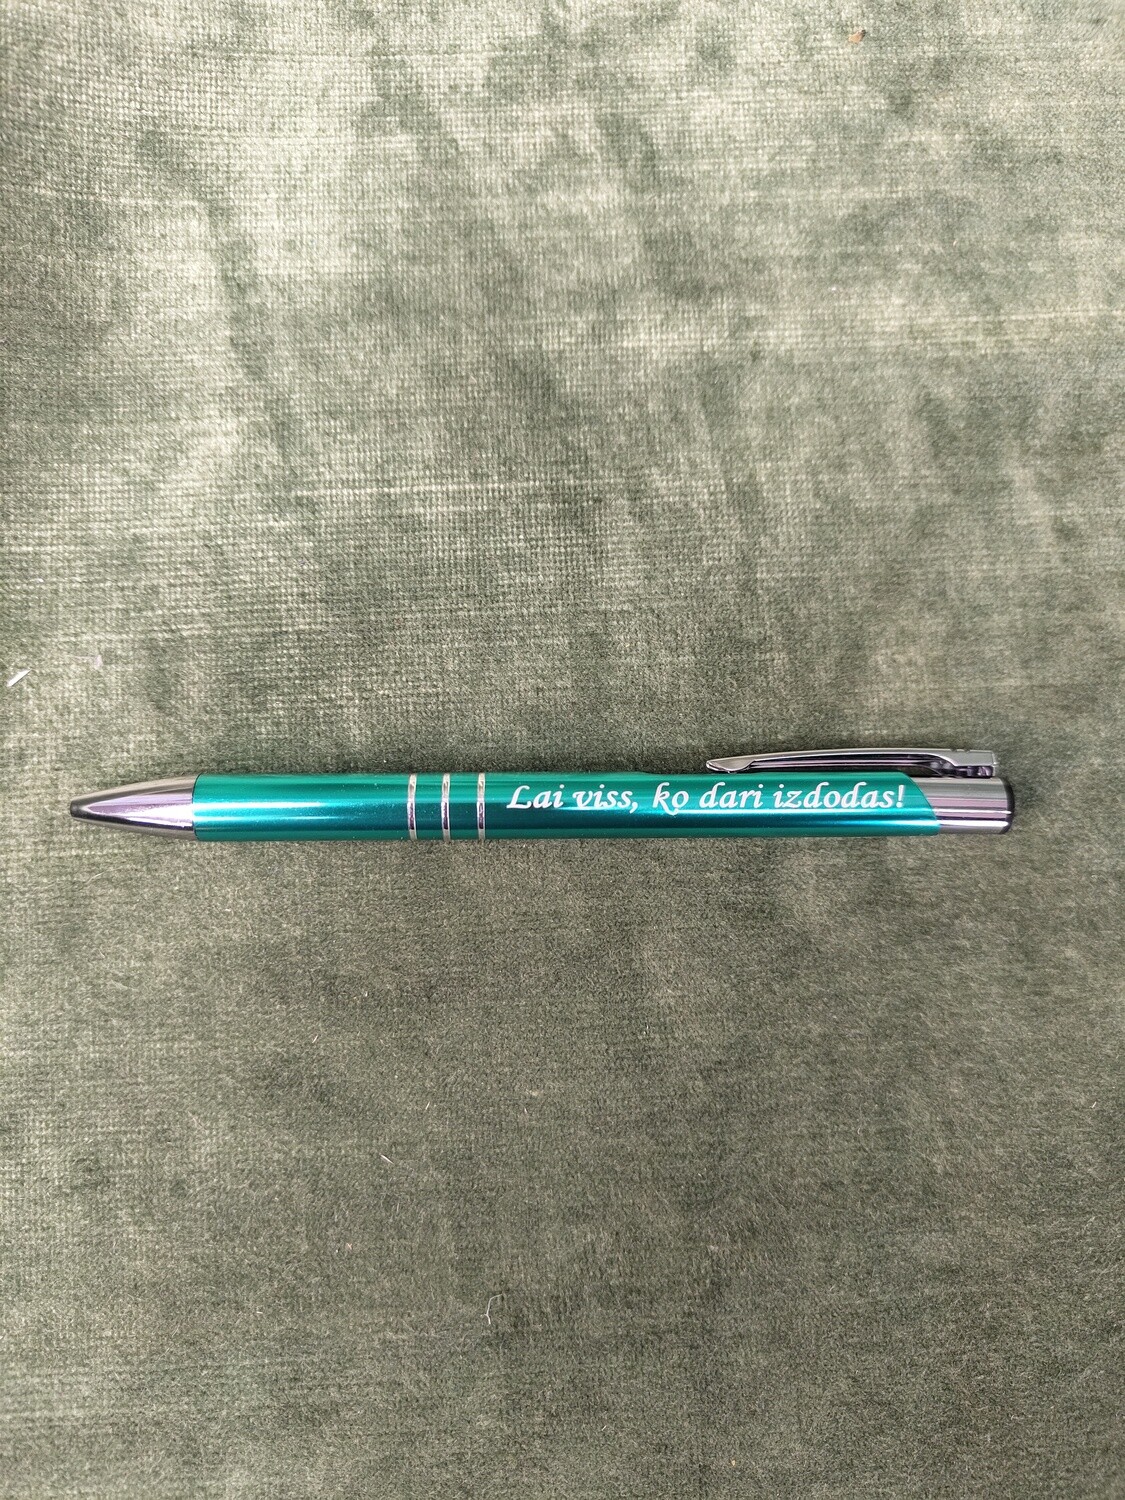 Pildspalva ar gravējumu "Lai viss, ko dari izdodas!"